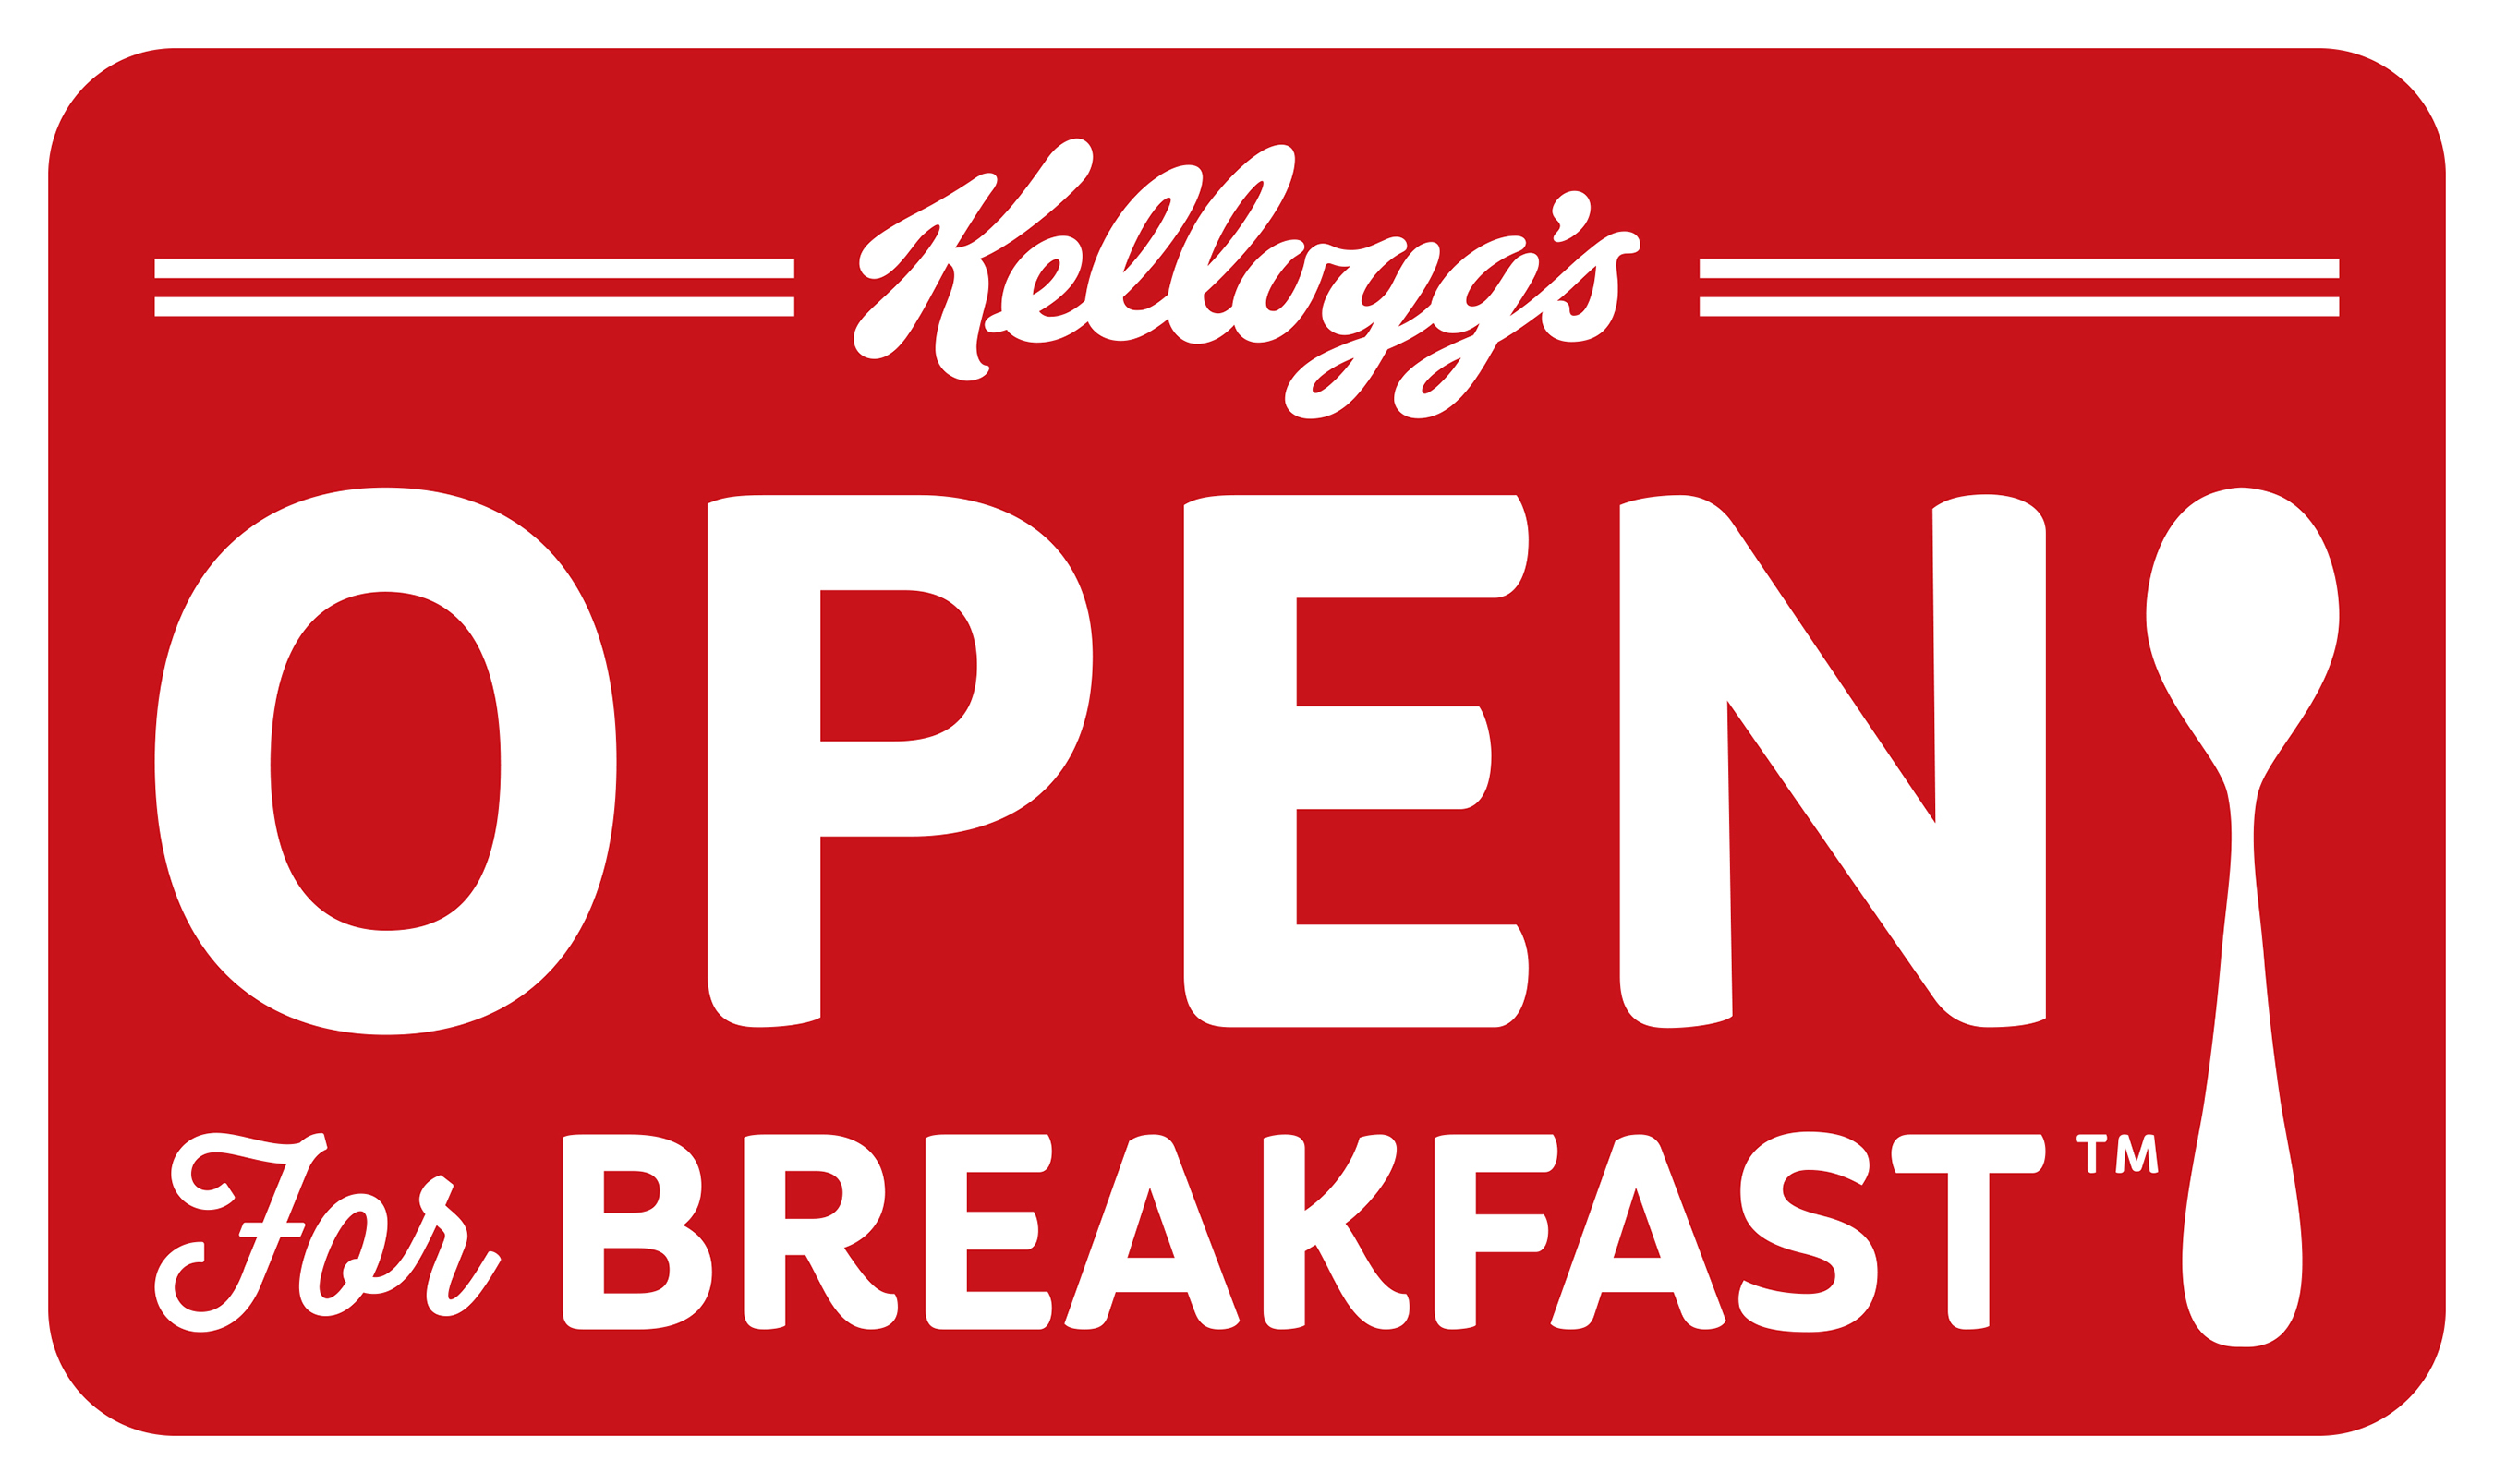 Kellogg's Open for Breakfast logo